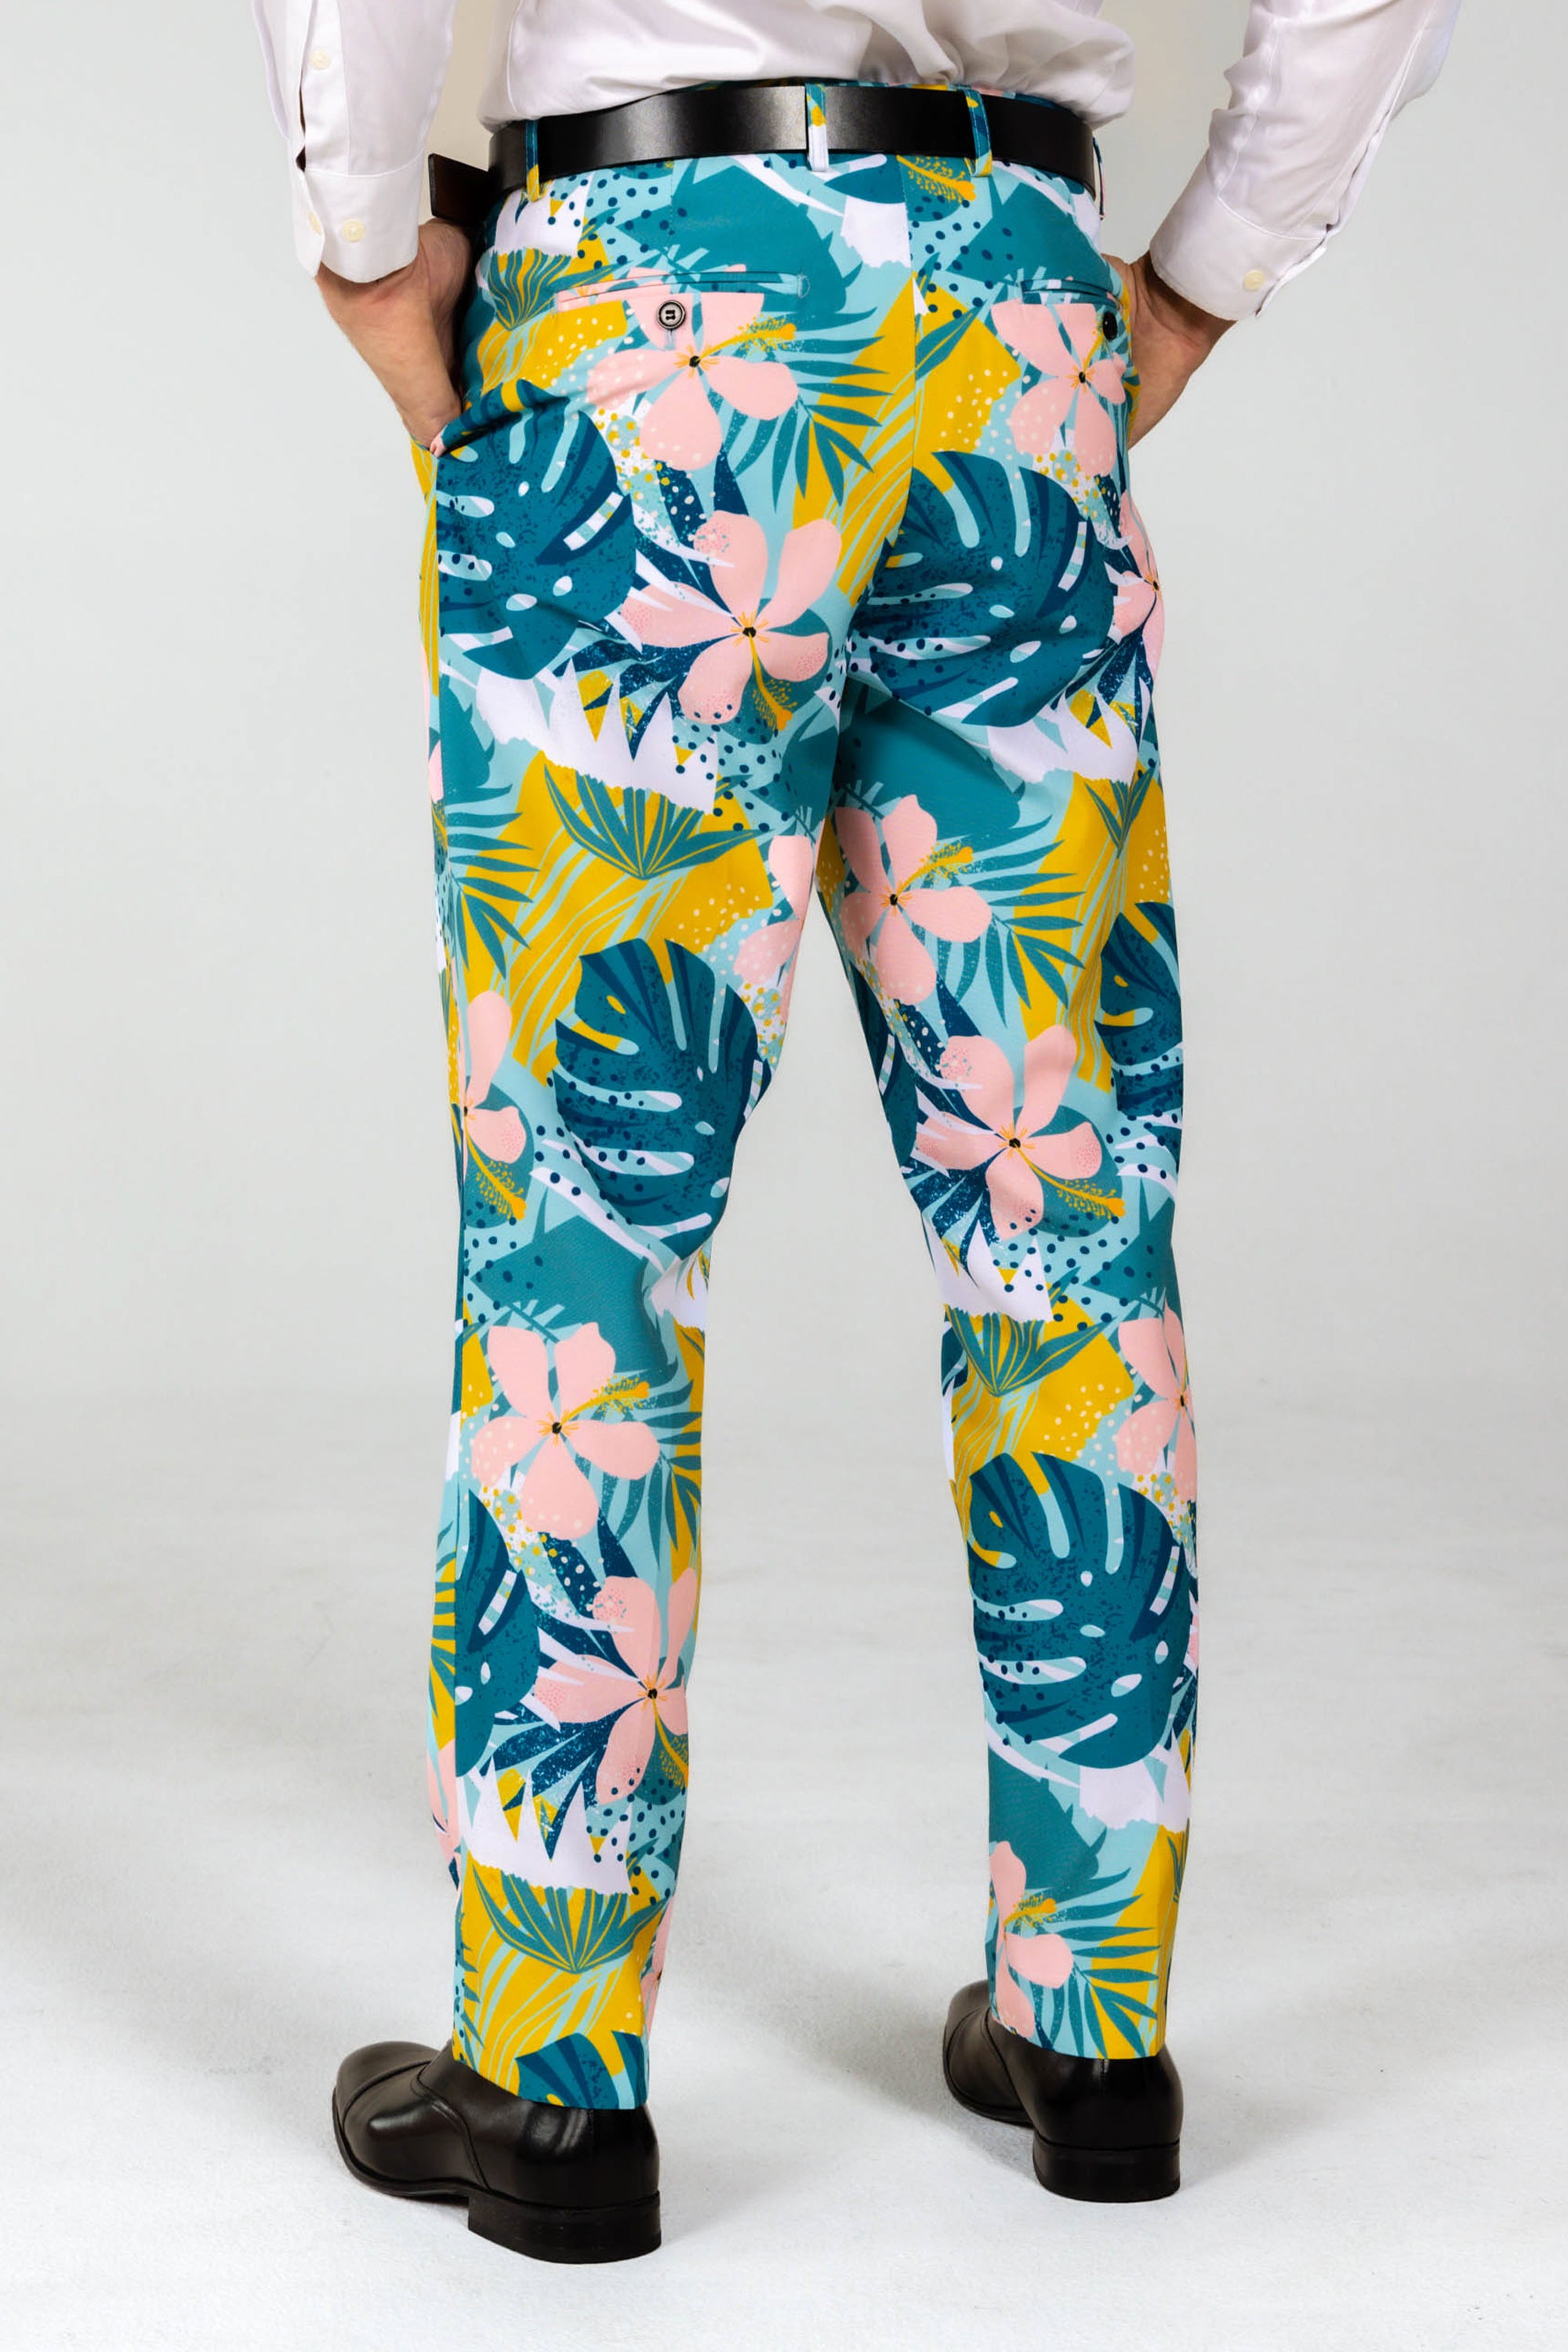 Shop Unique Printed Suit Trousers Vibrant Prints for Bold Style